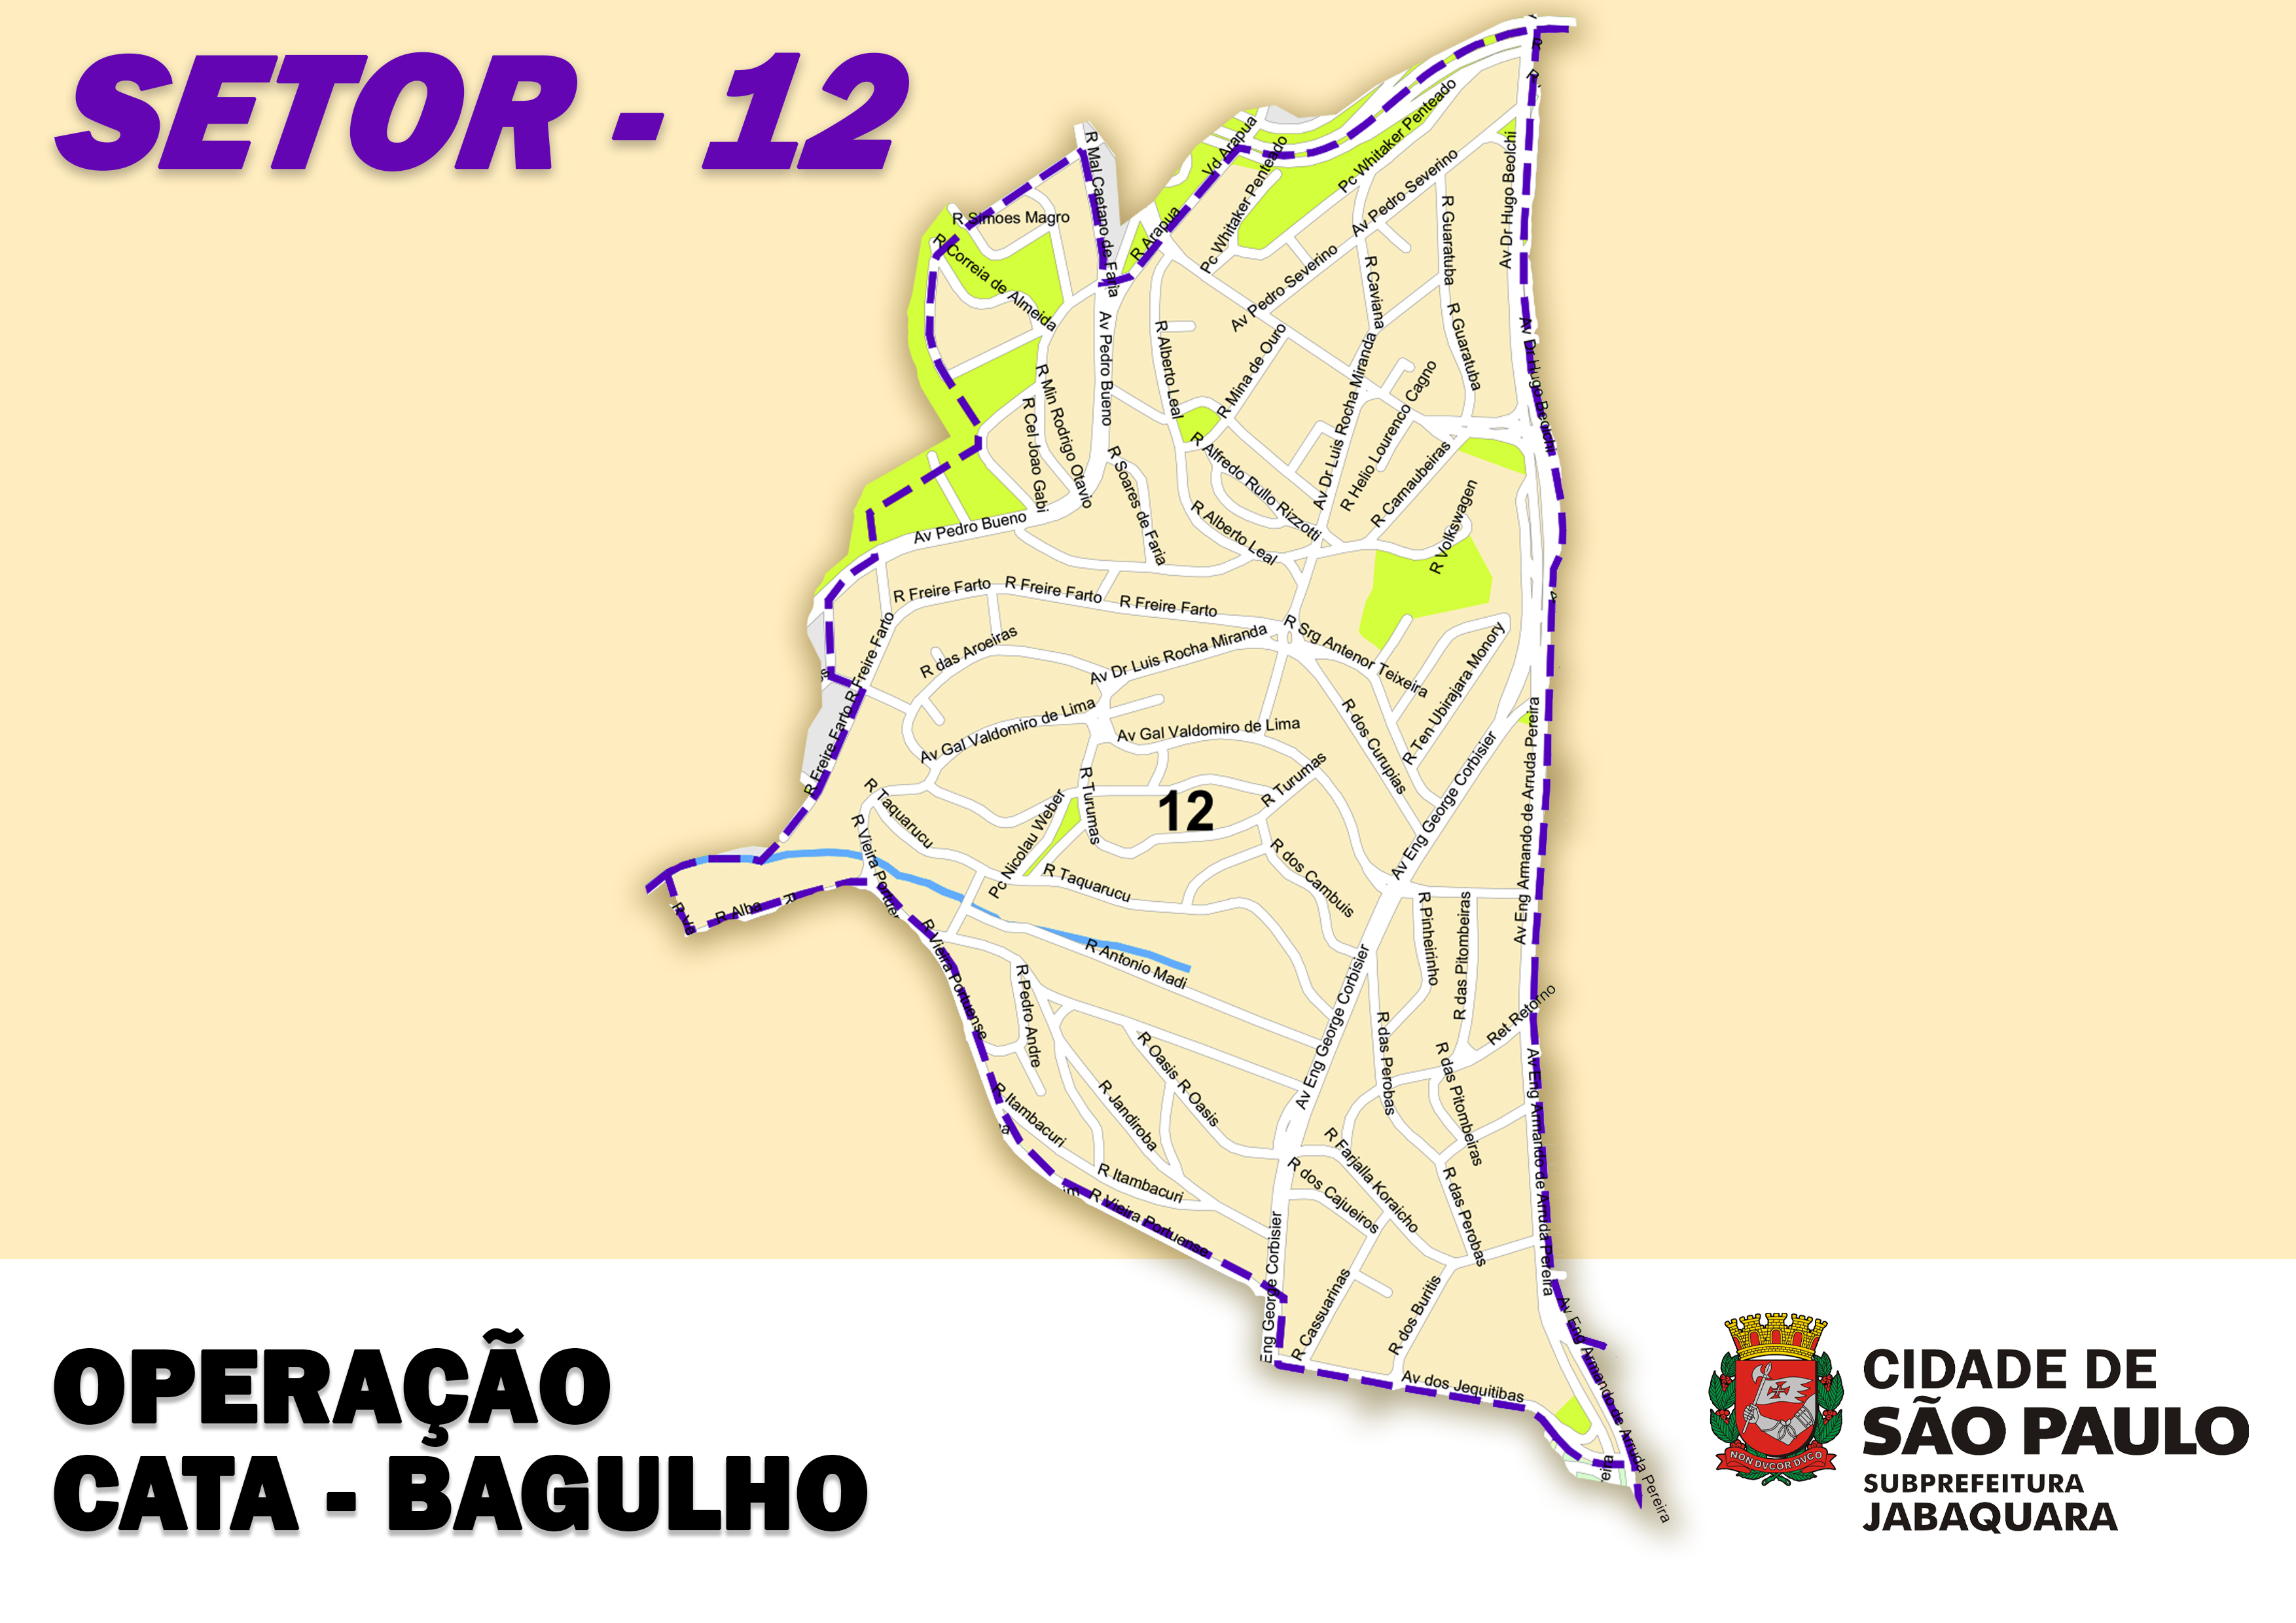 imagem com fundo amarelo e um mapa ao centro, com os dizeres "Operação Cata-bagulho" e o logotipo da prefeitura de São Paulo.